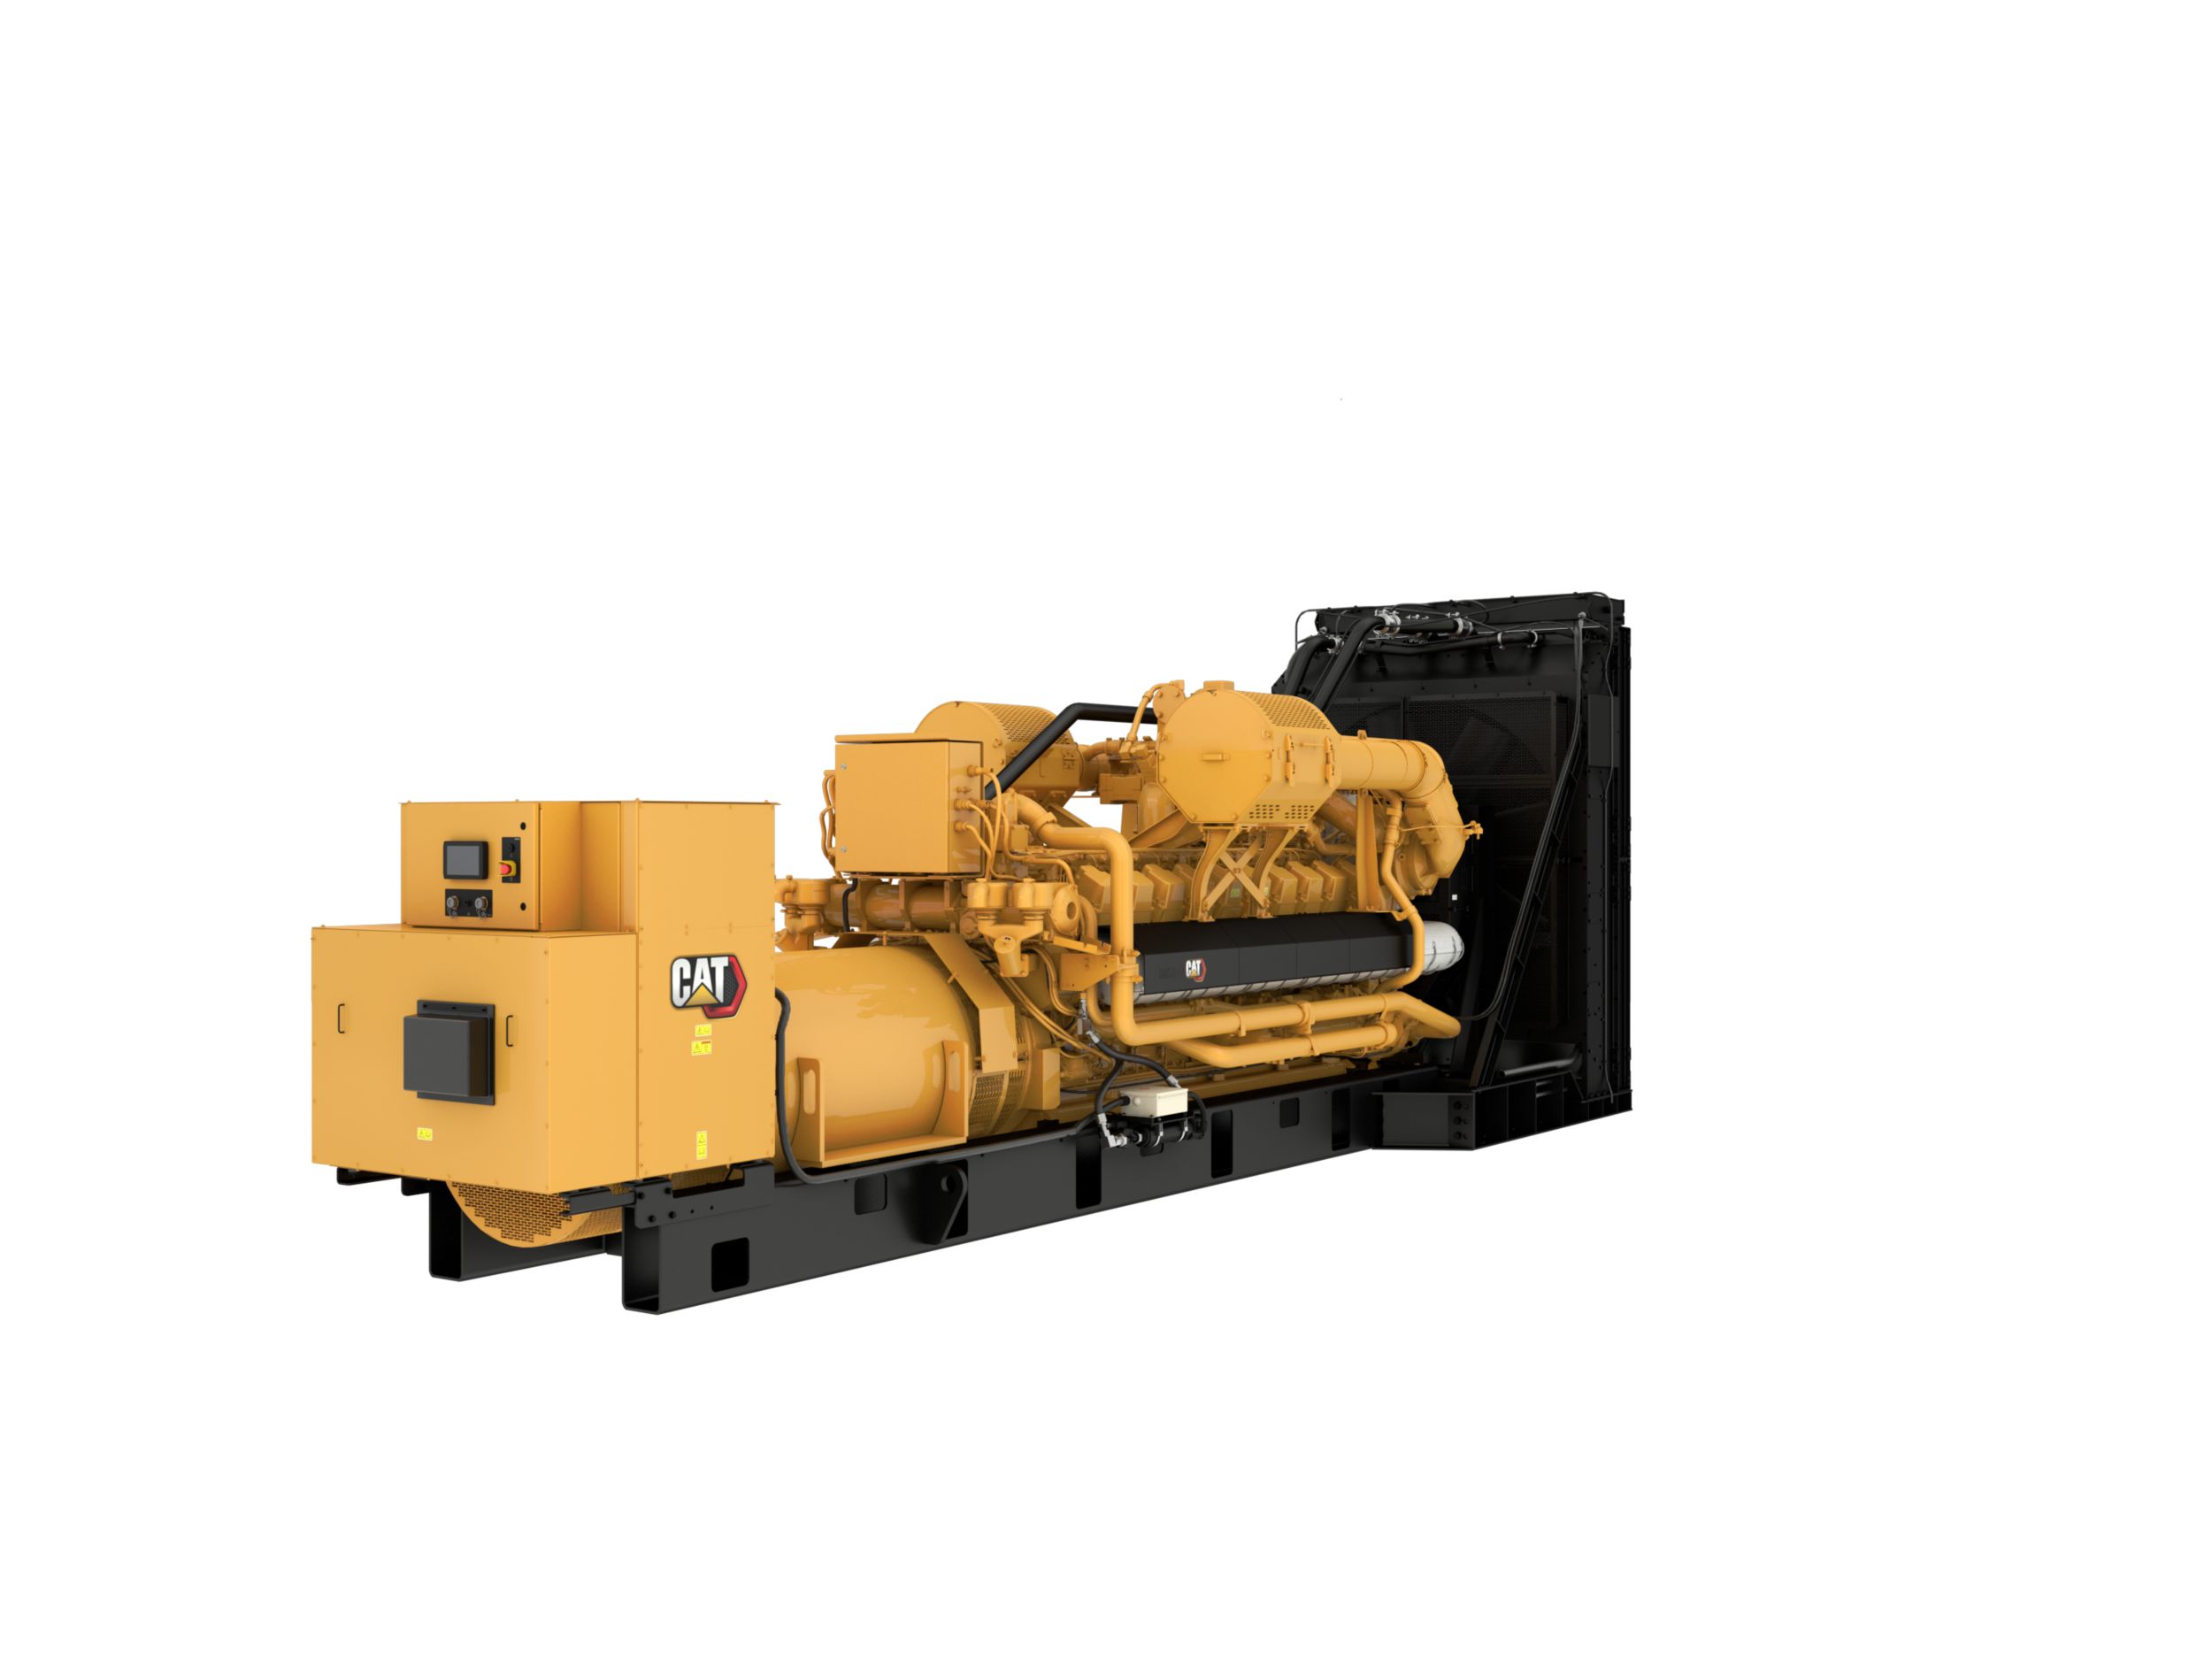 G3520 2000kW Gas Generator Set